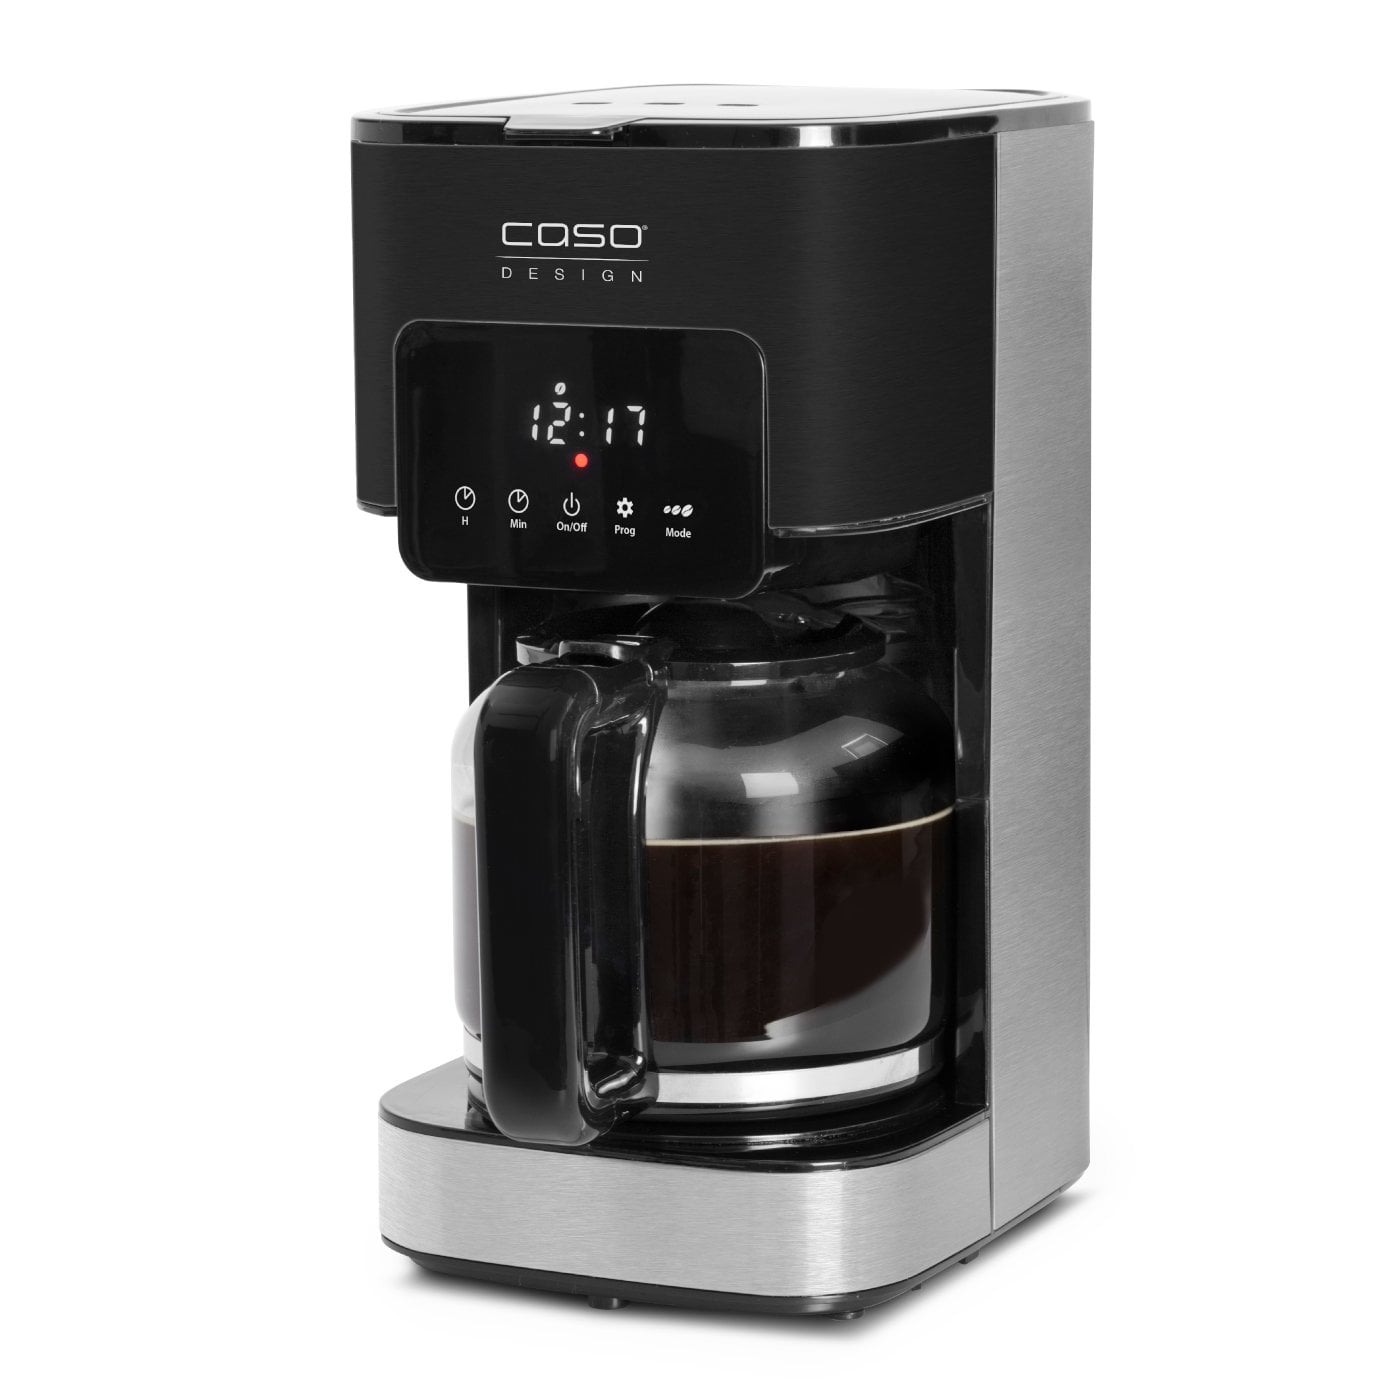 Caso Germany Coffee Taste & Style programozható kávéfőző, 1,5 l/12 csésze,  időzítő, érintésvezérlés, cseppmentesítő funkció, automatikus leállítás,  teljesítmény 900 W, fekete-ezüst